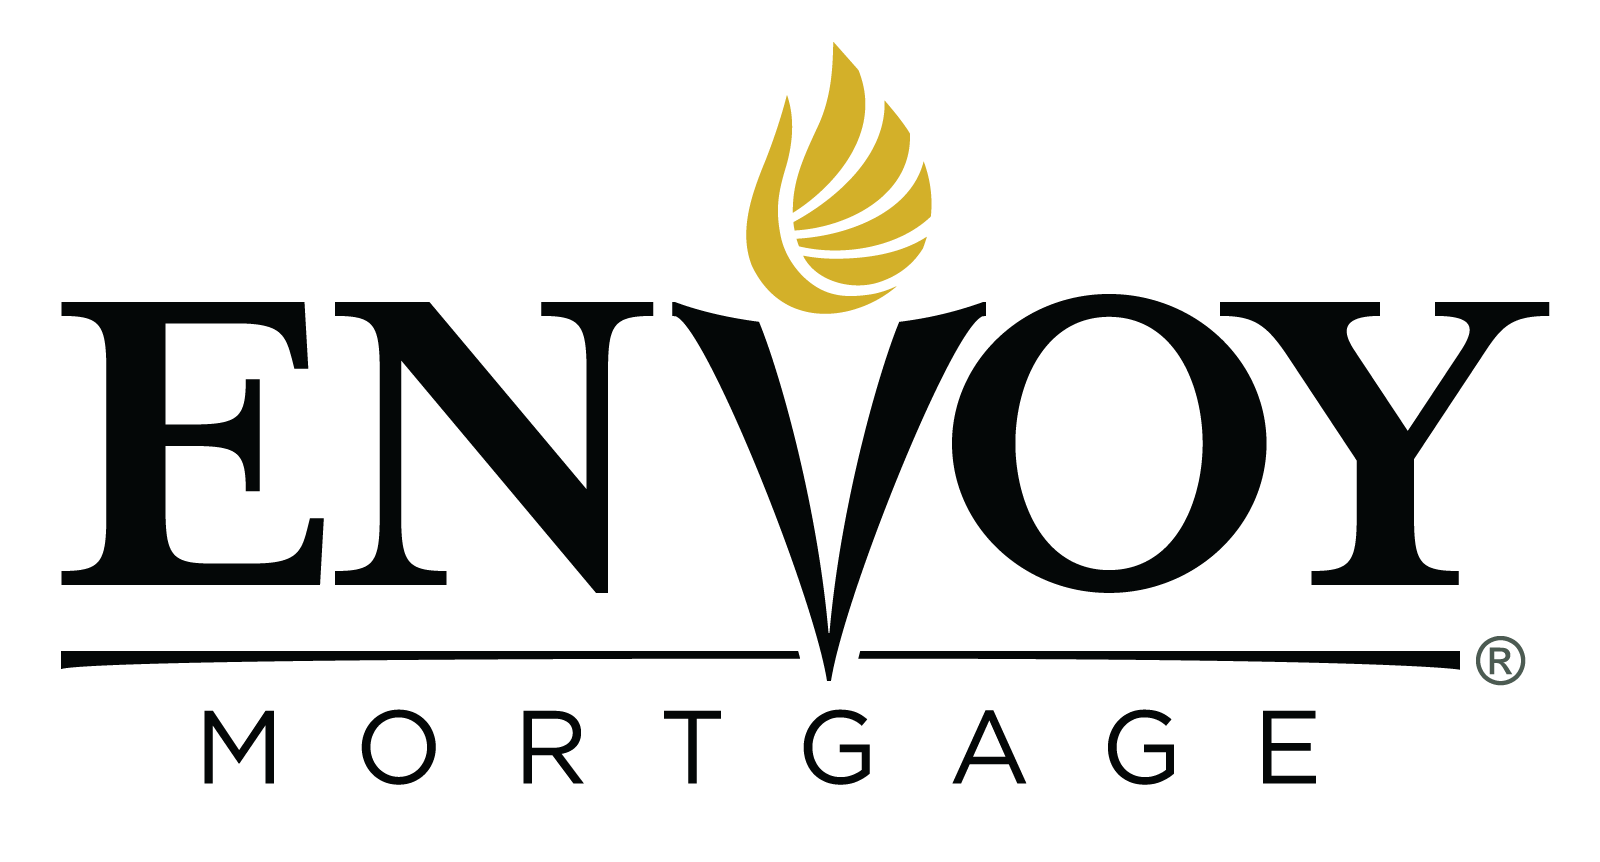 Mortgage Logo - Home Loans & Mortgage Lending